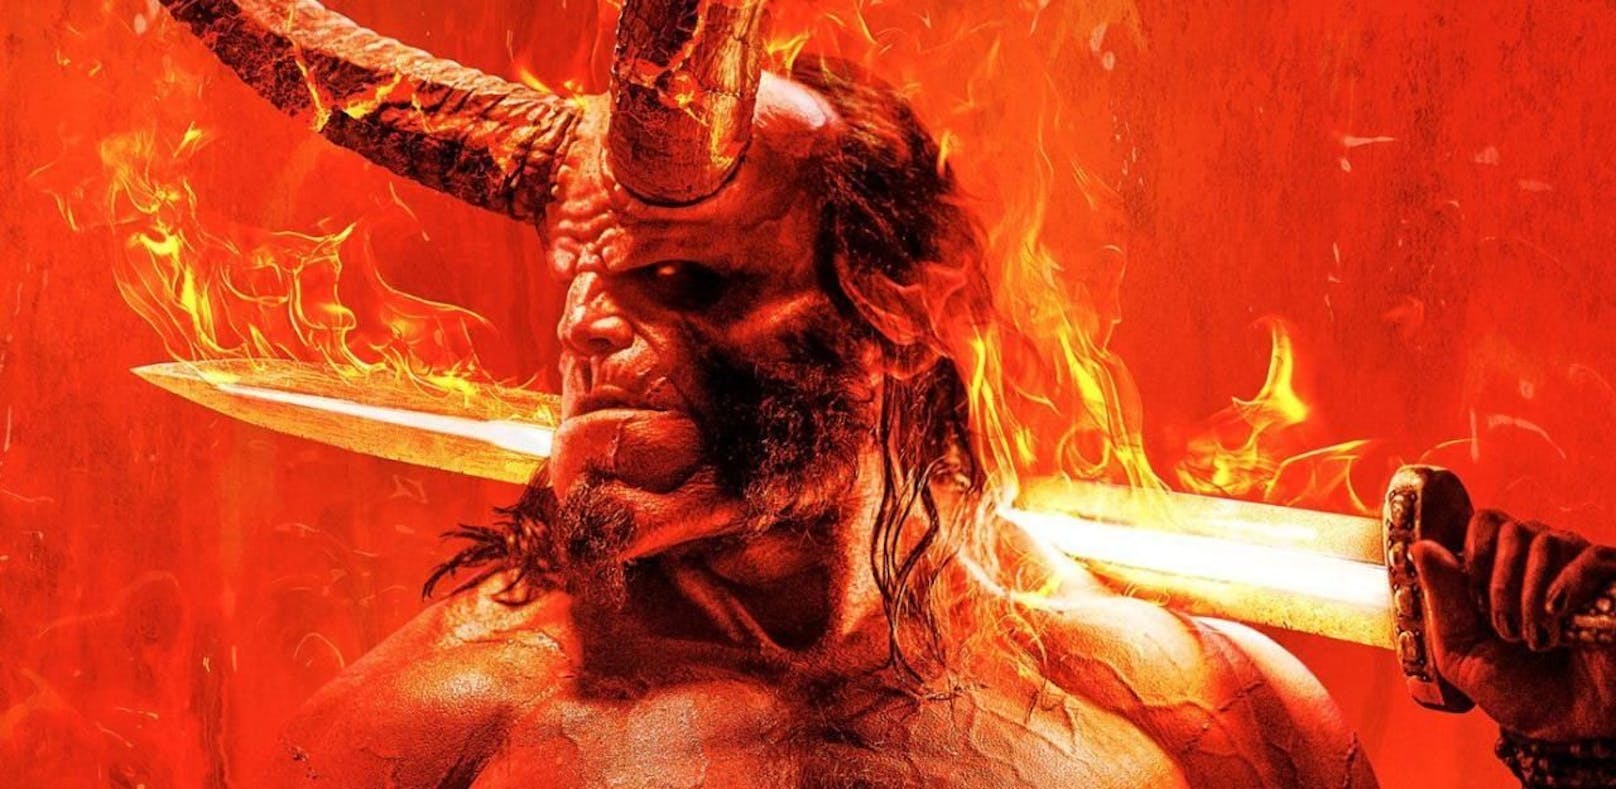 Episch-höllisches Poster für Comicdämon "Hellboy"